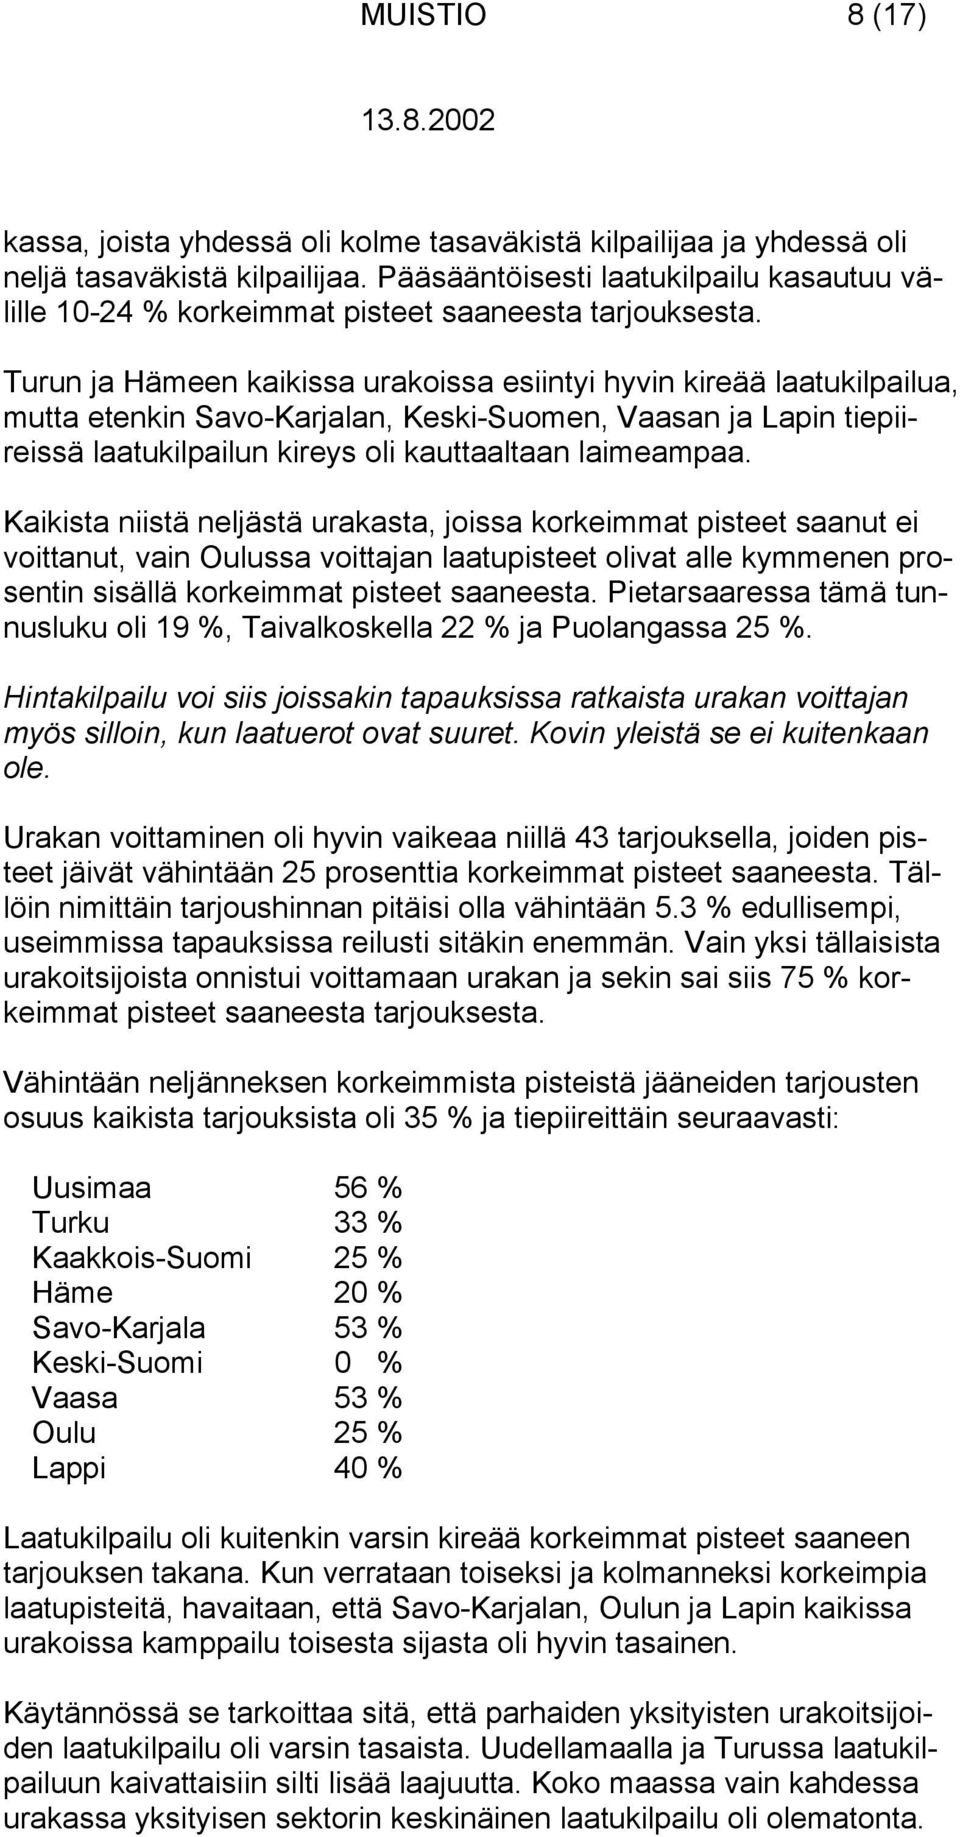 Turun ja Hämeen kaikissa urakoissa esiintyi hyvin kireää laatukilpailua, mutta etenkin Savo-Karjalan, Keski-Suomen, Vaasan ja Lapin tiepiireissä laatukilpailun kireys oli kauttaaltaan laimeampaa.